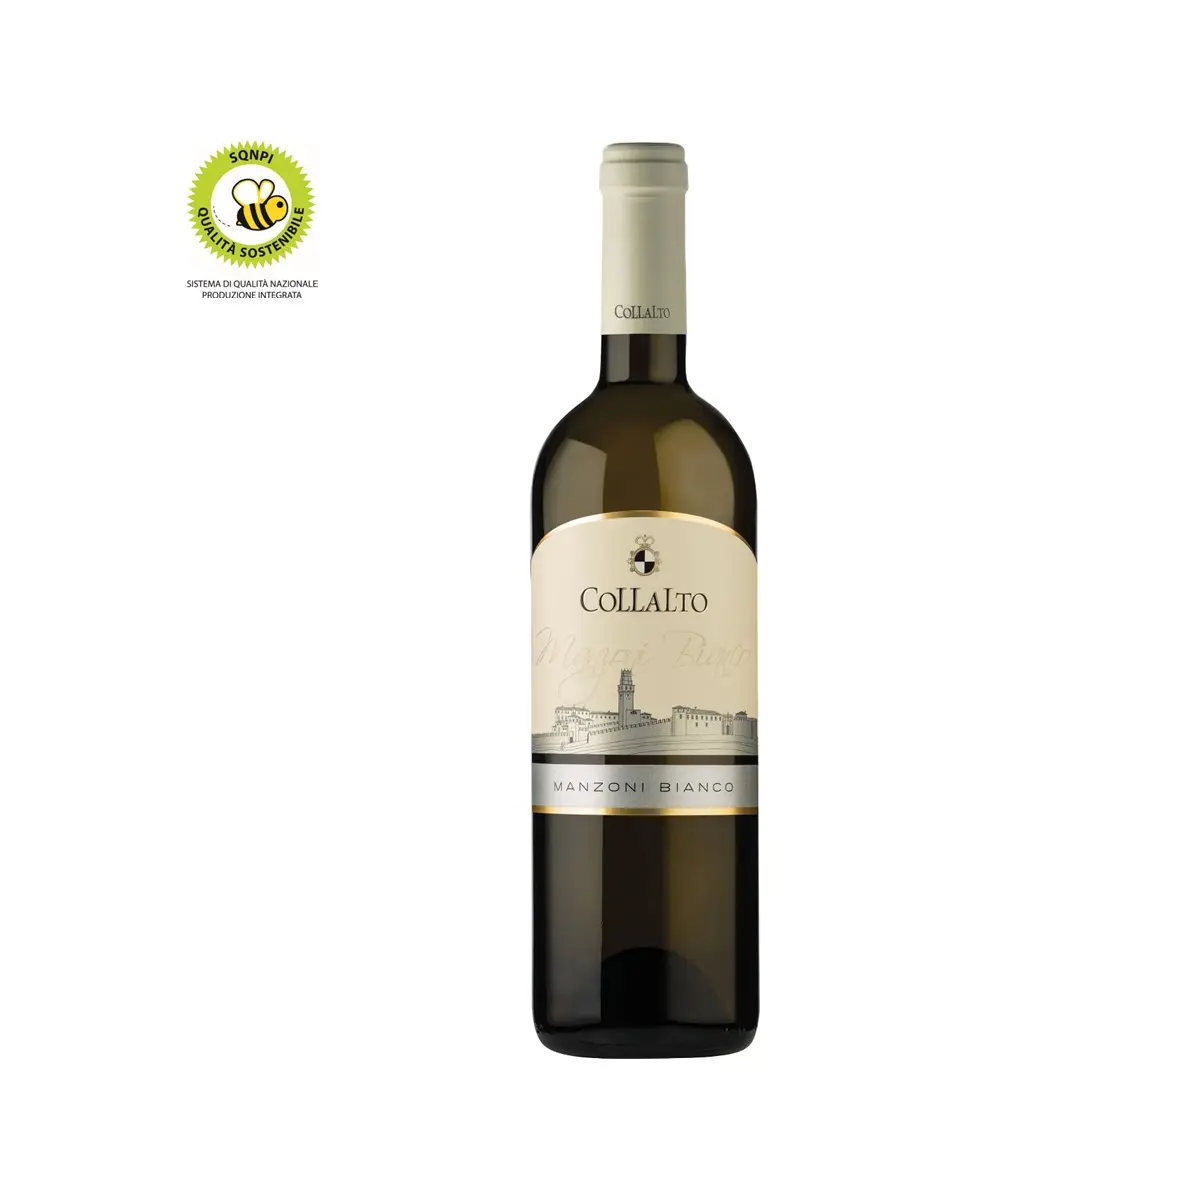 High quality Italian Wine 13.5% IGP still white wine vintage 2020 glass bottle 75 cl for horeca